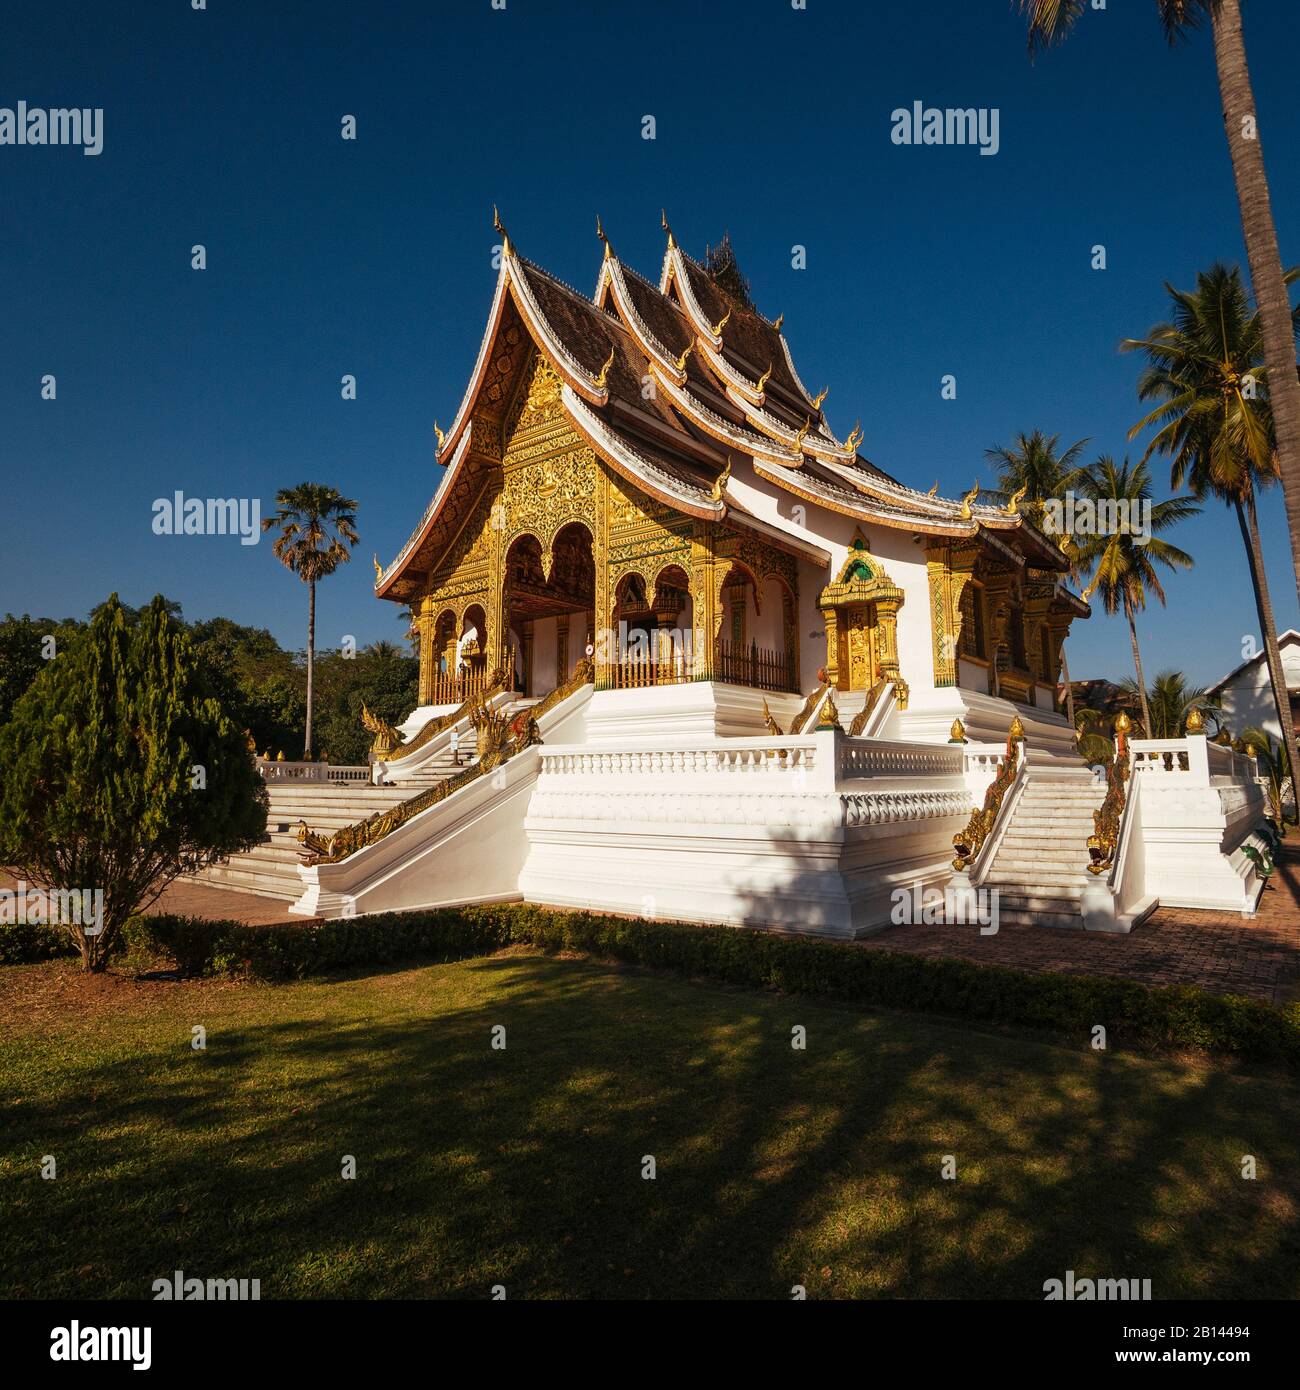 Haw Pha Bang Pavillion in the grounds of the Royal Palace, Luang Prabang, Laos Stock Photo